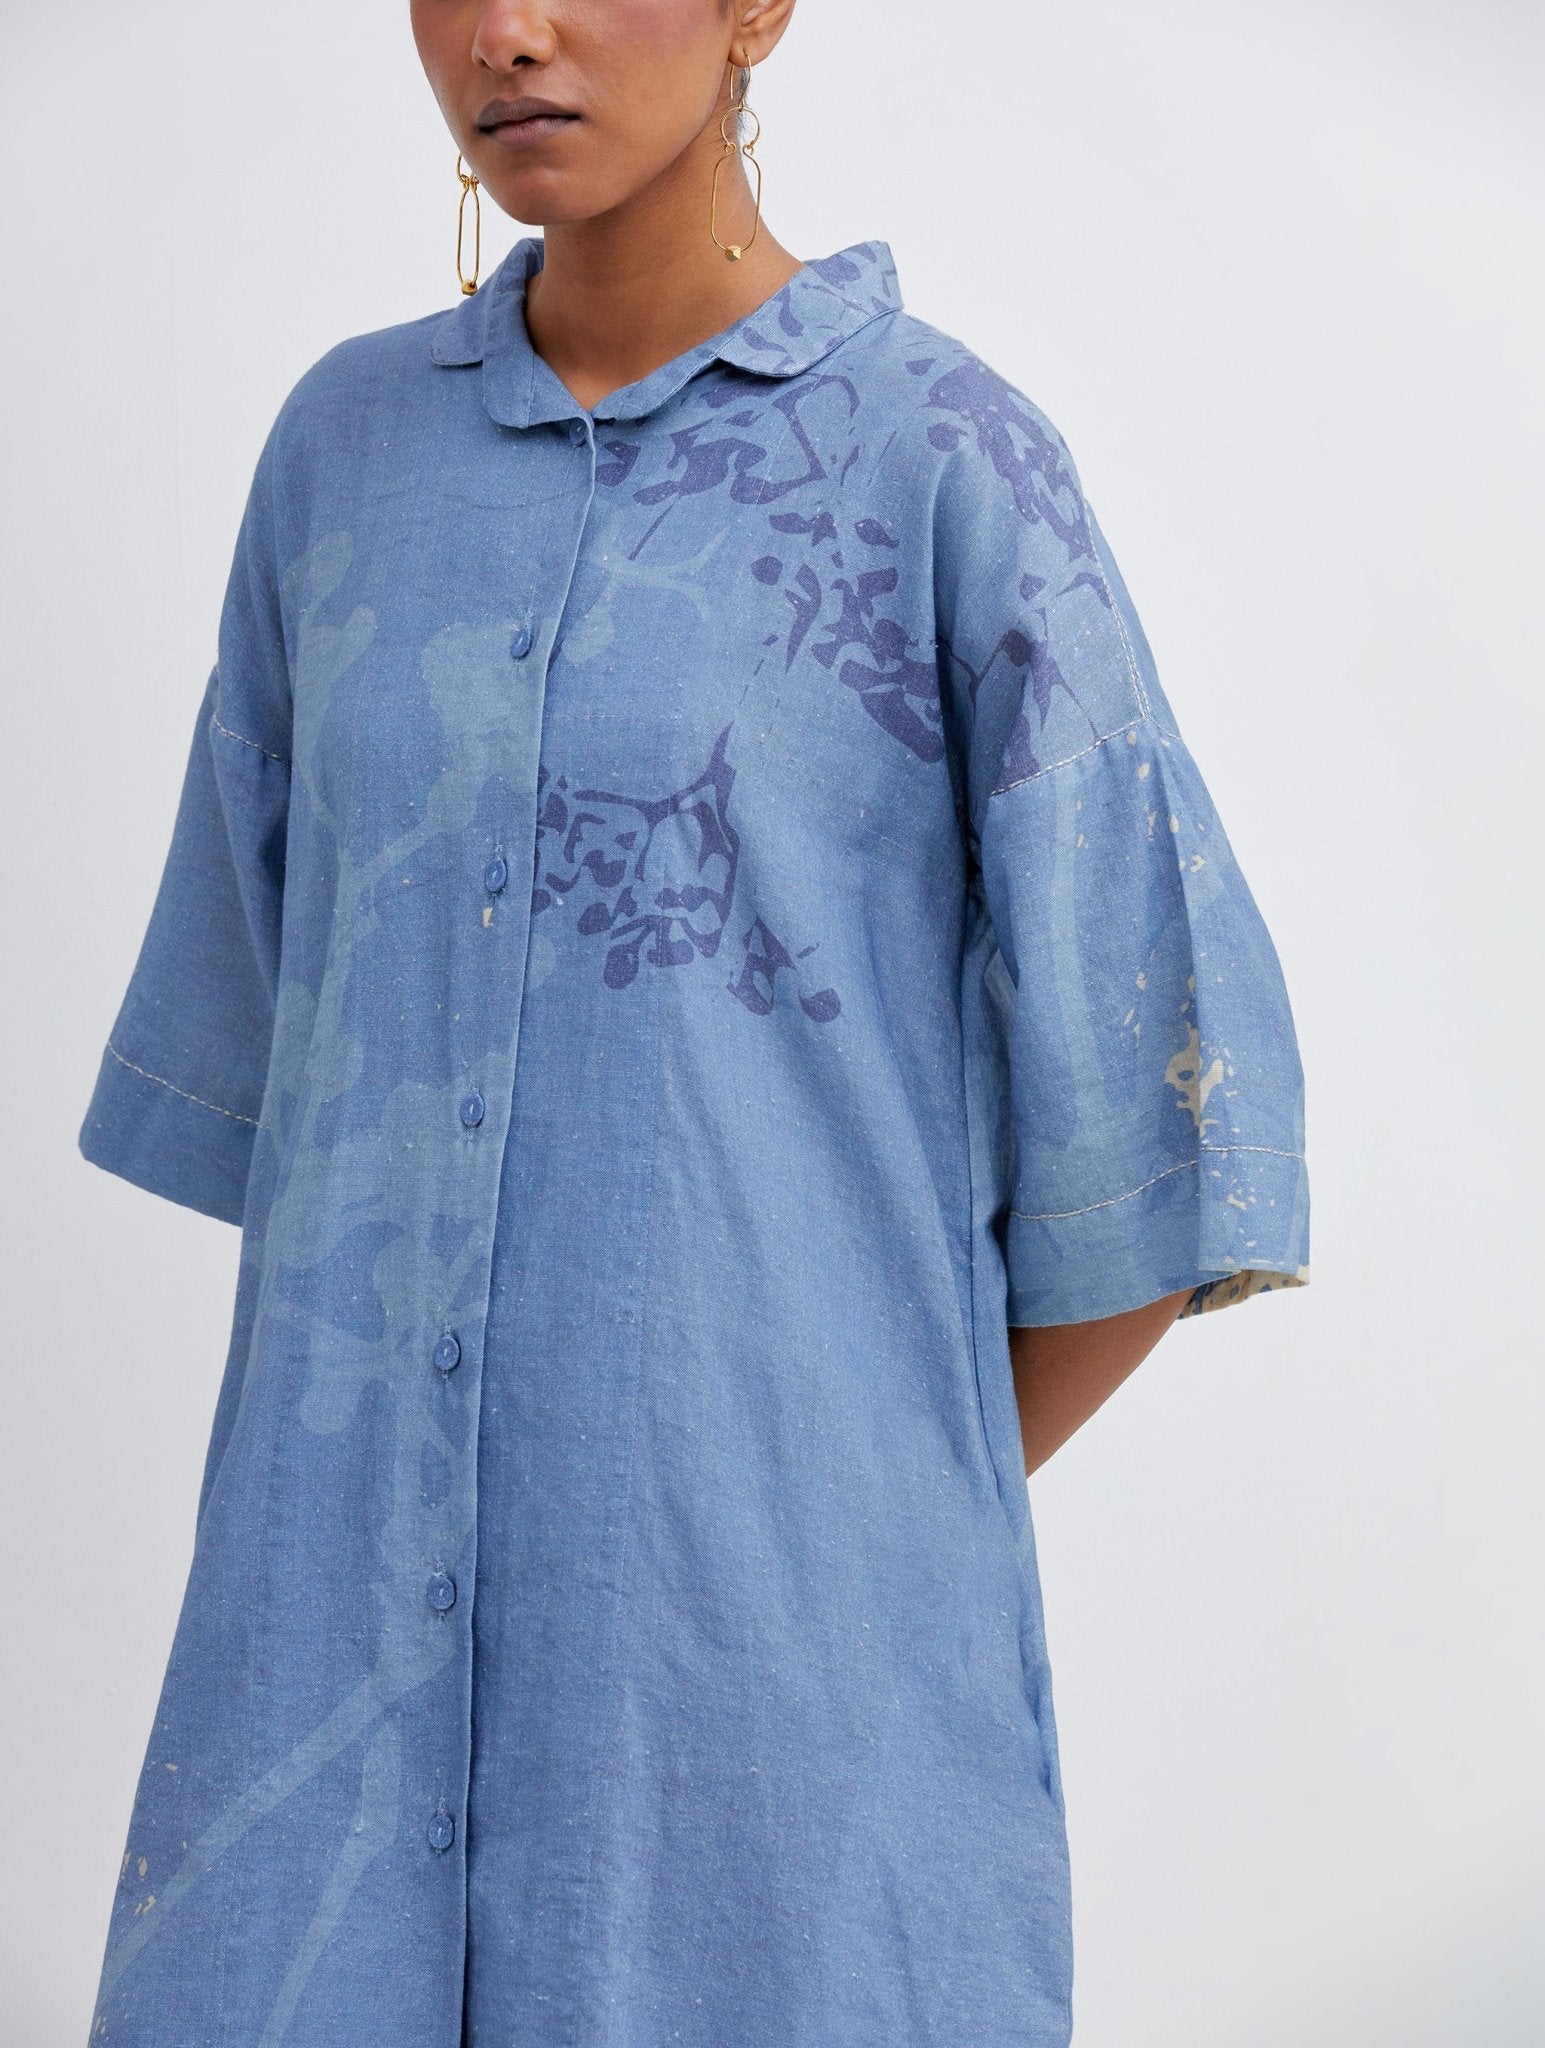 Foliage Blue Shirt Dress - CiceroniBhavik Shah